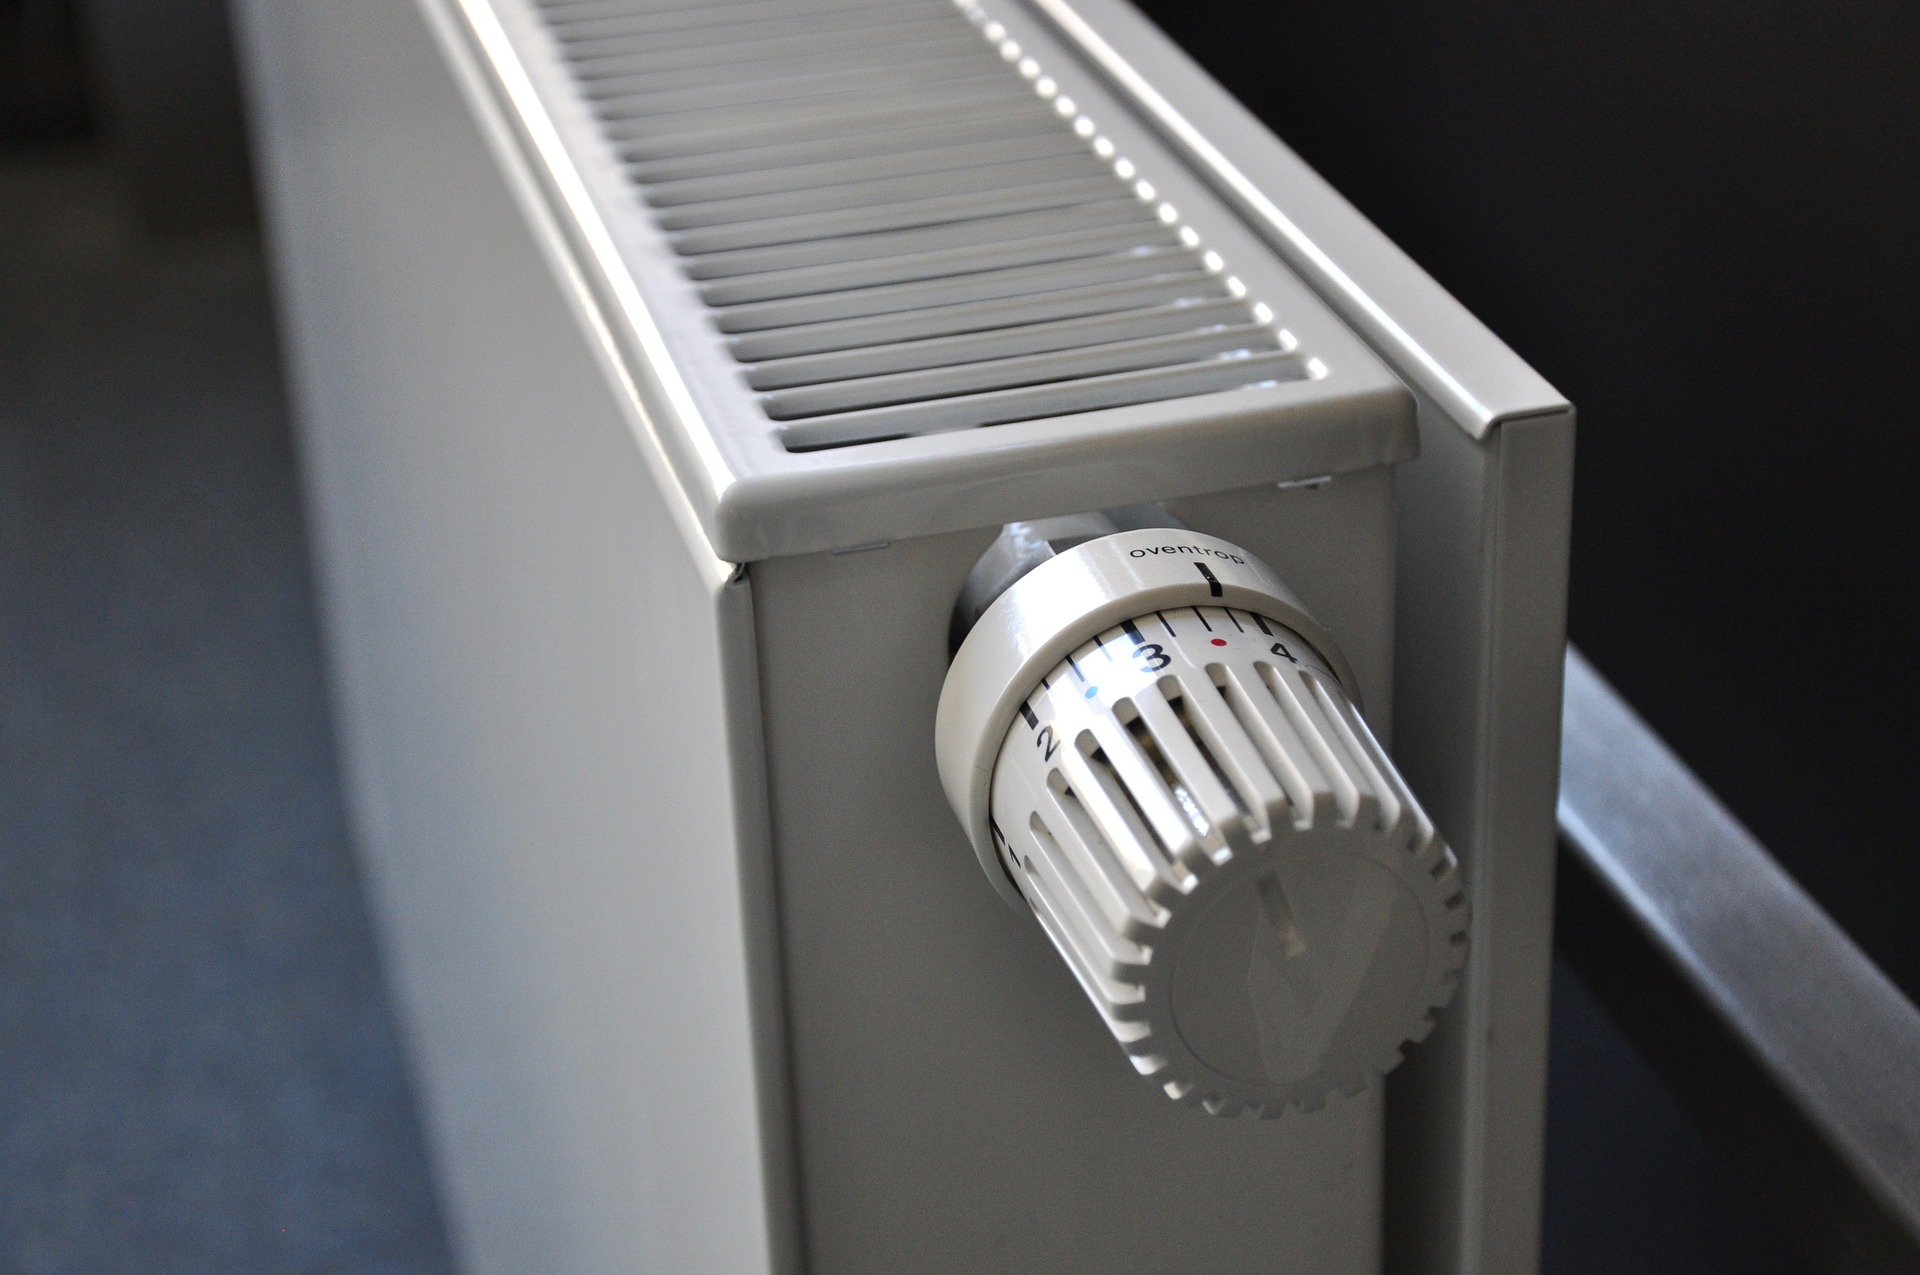 Juntas Sadolu | Cómo evitar dañar tu caldera eligiendo bien las juntas de los radiadores.